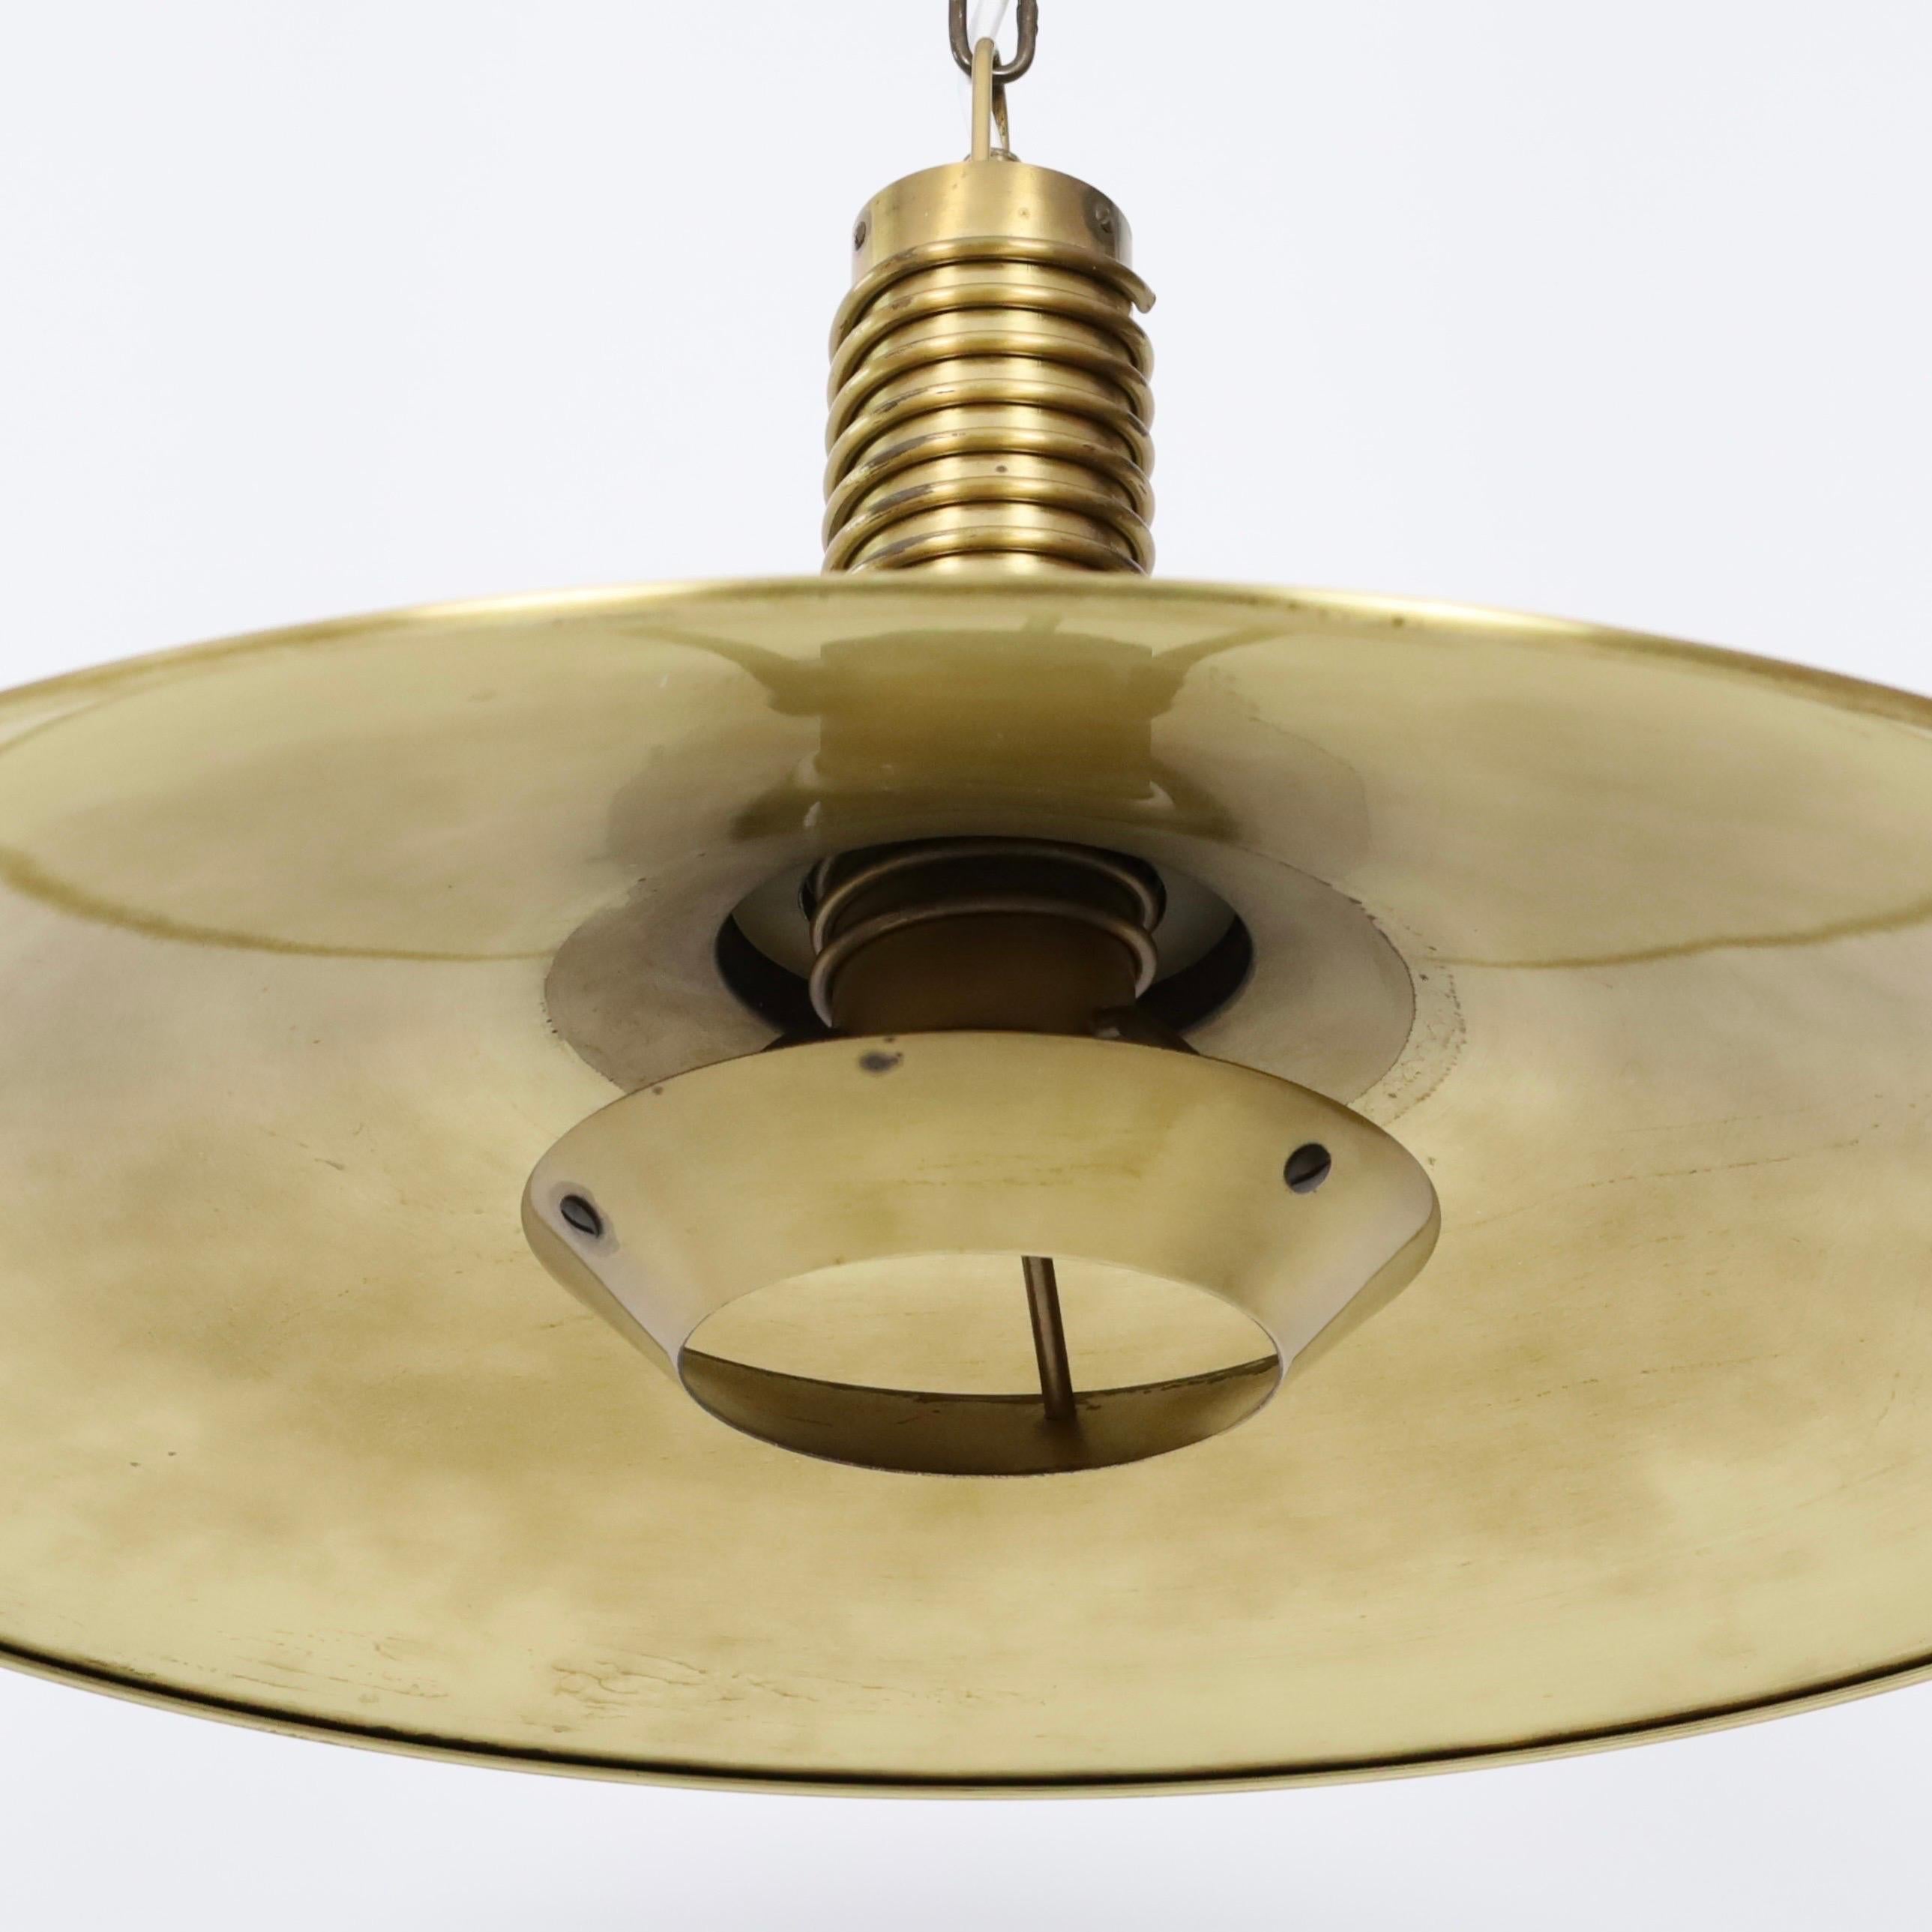 Substantial Danish Modern Brass Pendant Light by Fog & Morup, 1960s, Denmark For Sale 5